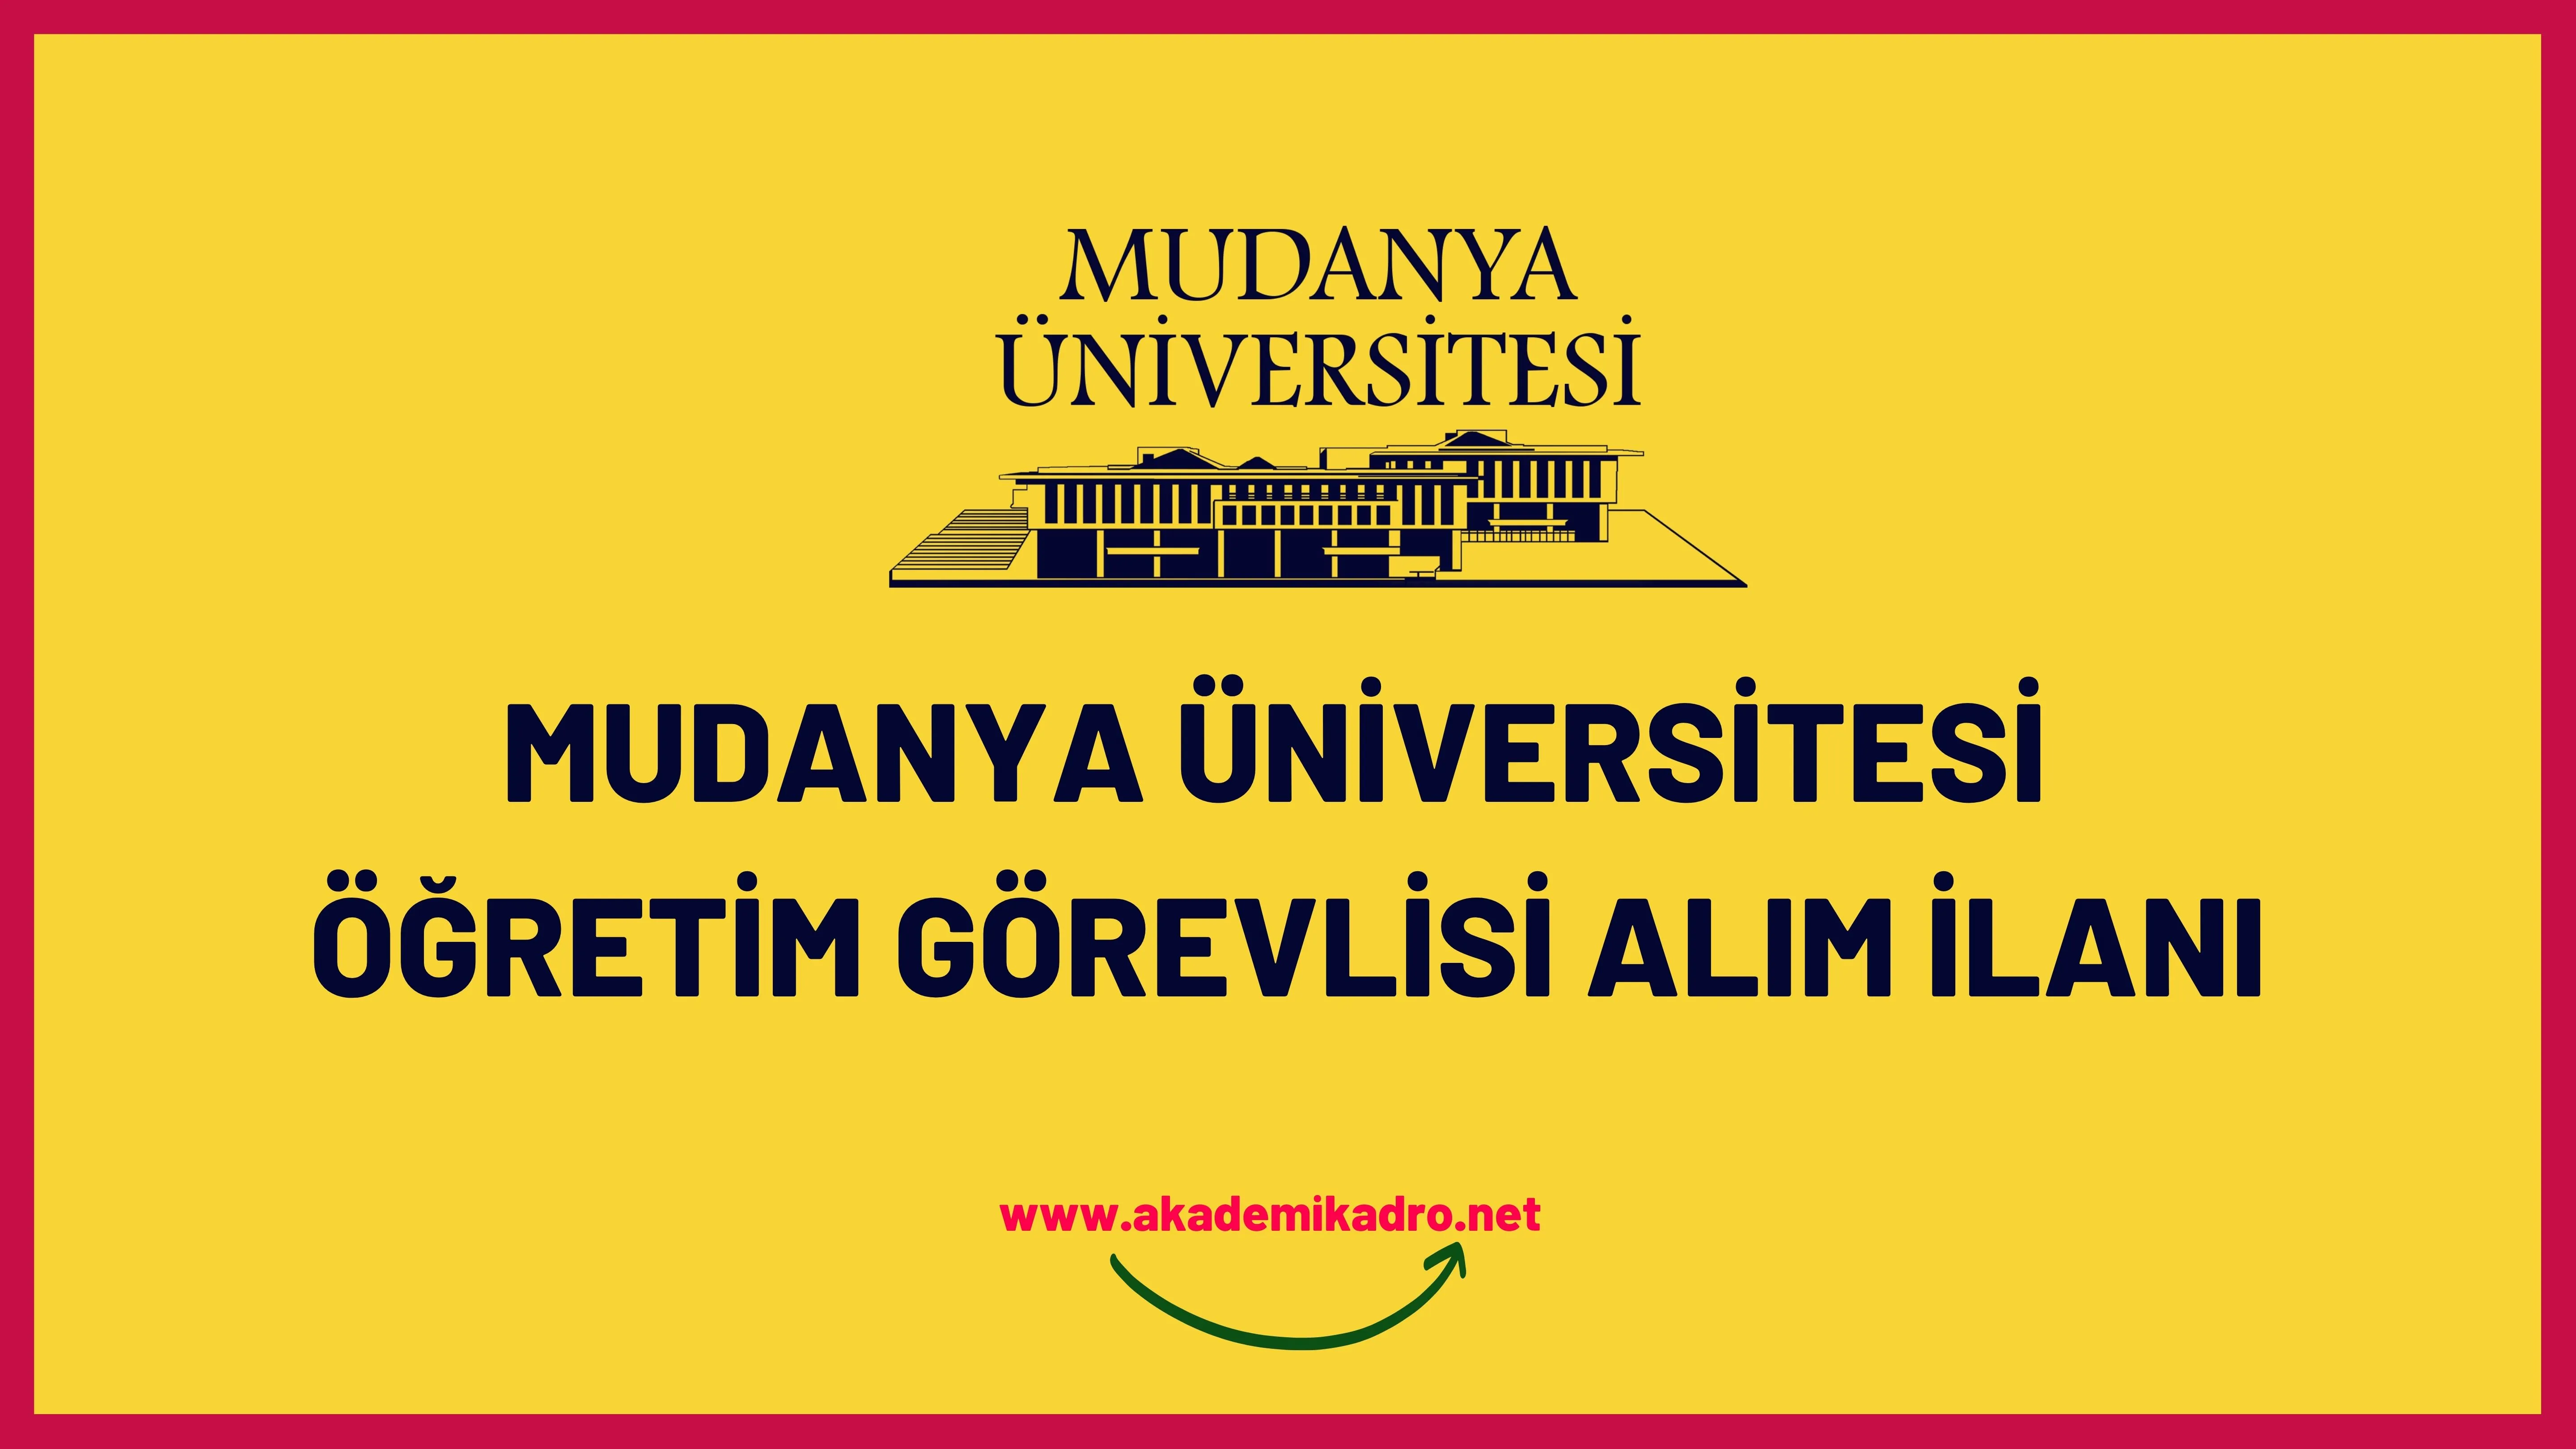 Mudanya Üniversitesi Öğretim görevlisi alacak. Son başvuru tarihi 23 Ocak 2023.